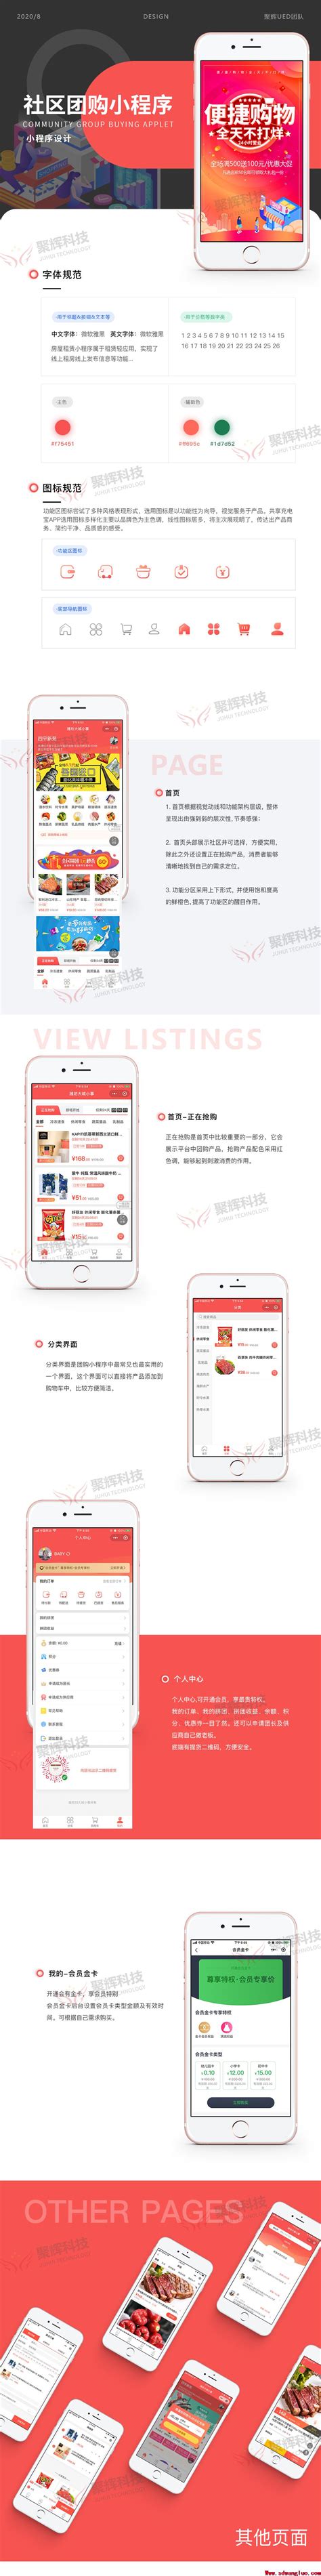 APP成功案例-潍坊app开发|小程序制作|网站建设|潍坊商城开发|潍坊专业软件公司-聚辉网络值得信赖